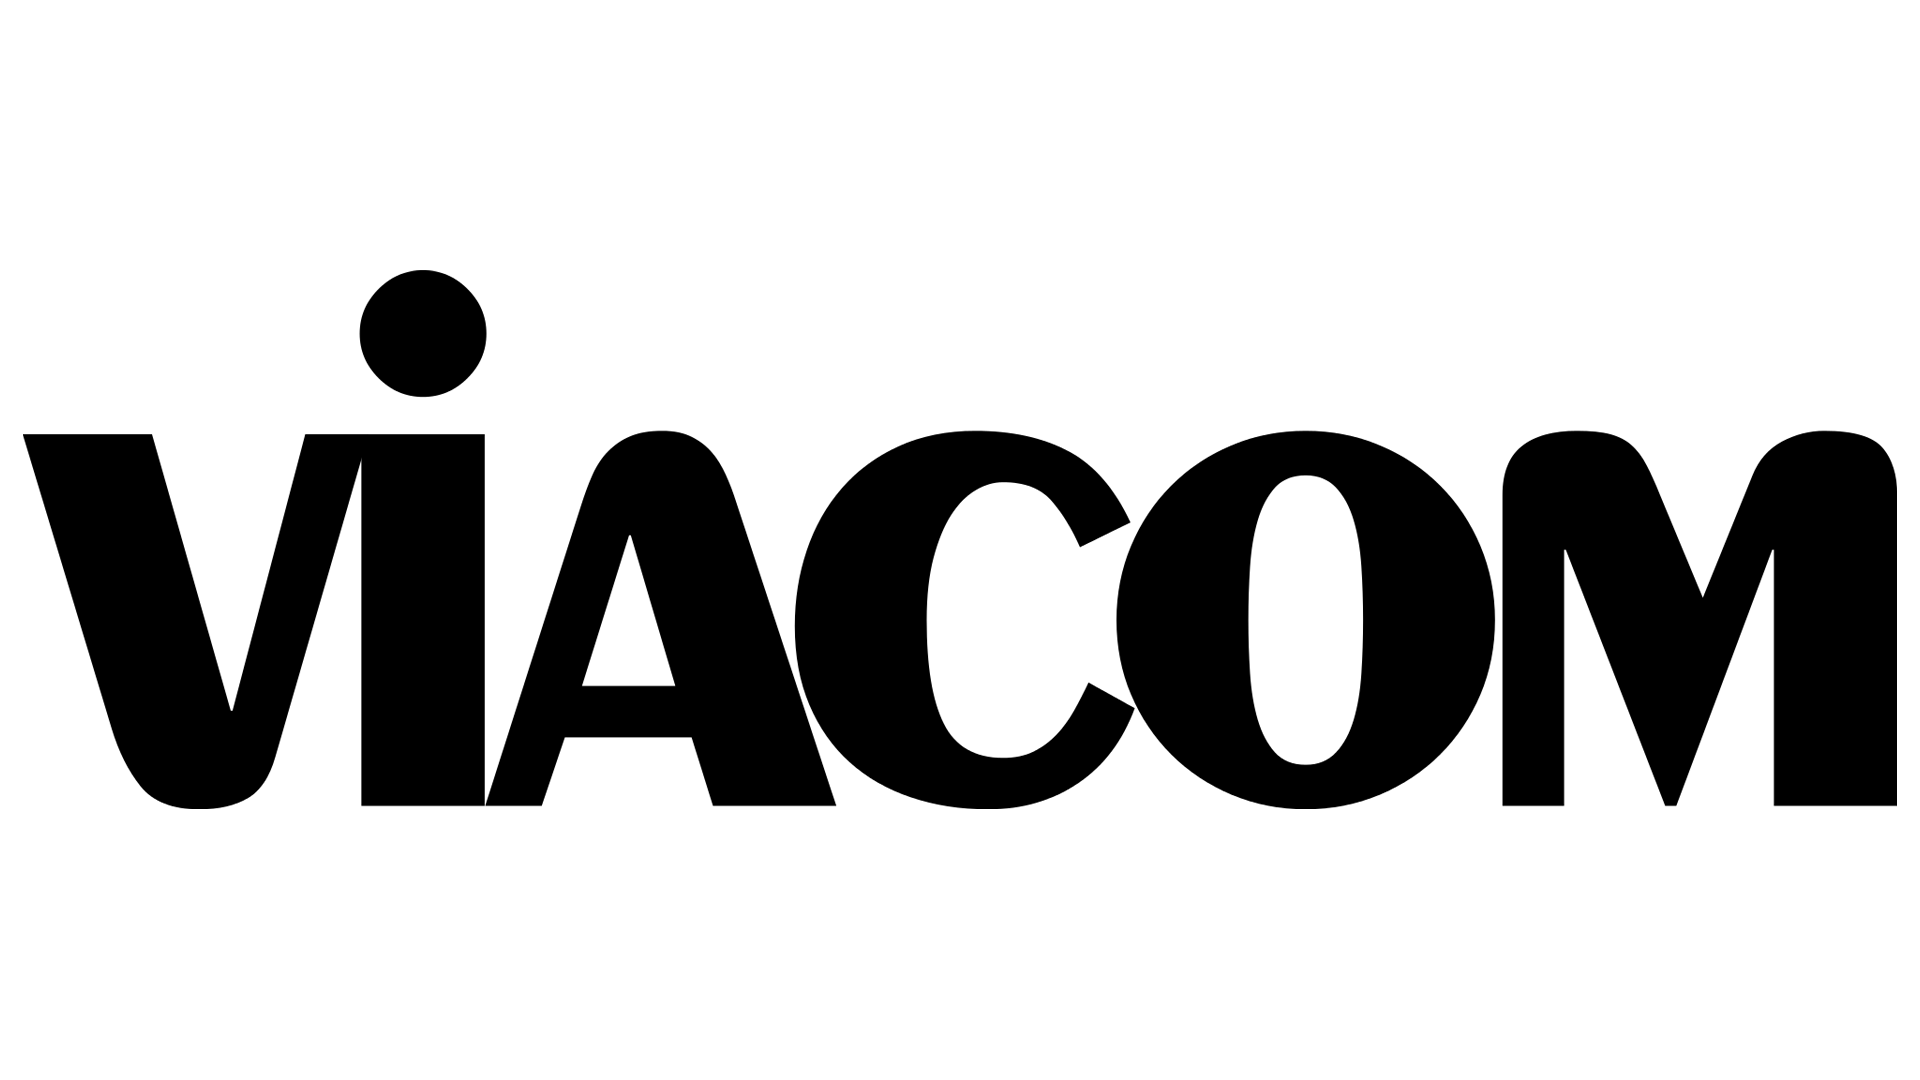 Viacom Logo - Viacom Logo, Viacom Symbol, Meaning, History and Evolution